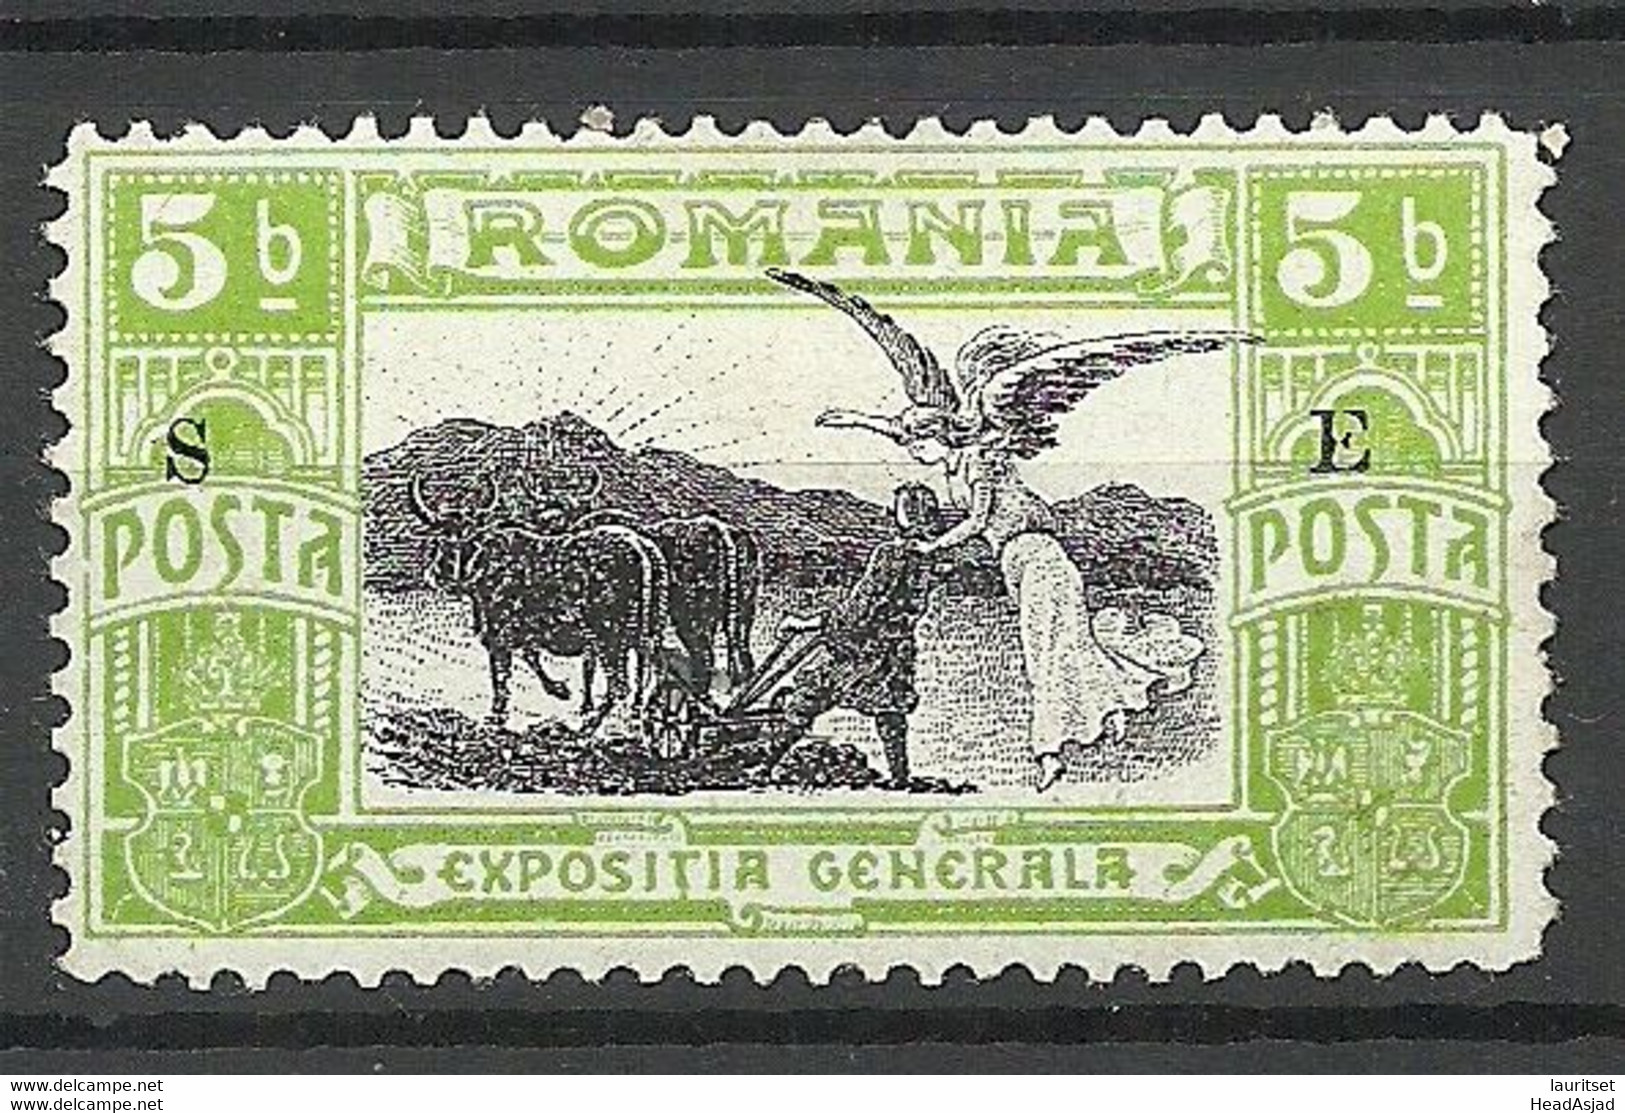 ROMANIA Rumänien 1906 Michel I * Dienstmarke Service - Dienstzegels